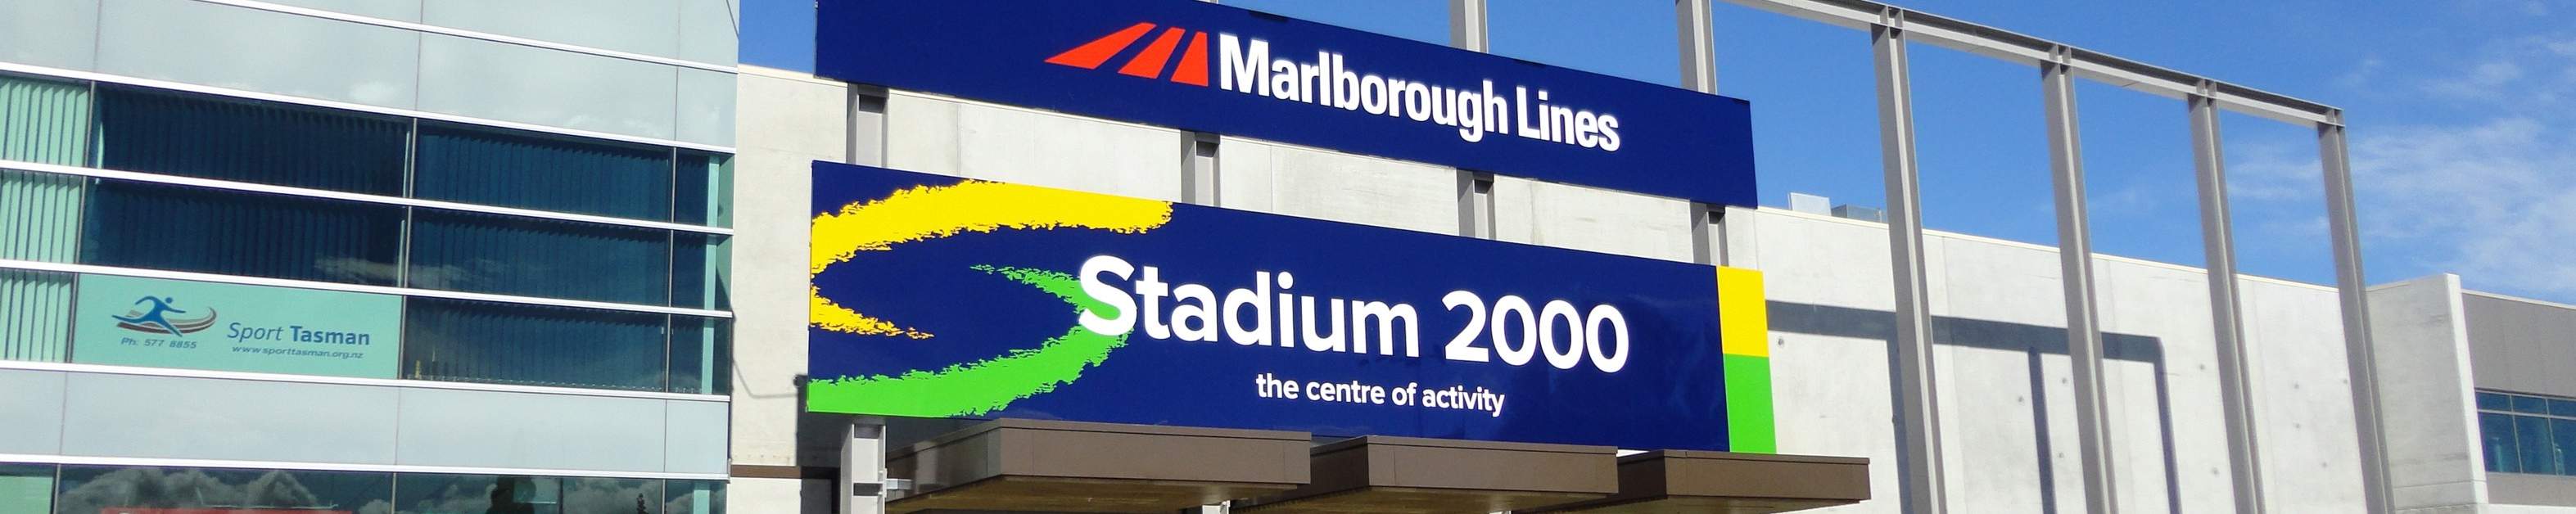 Marlborough Stadium 2000 - Blenheim